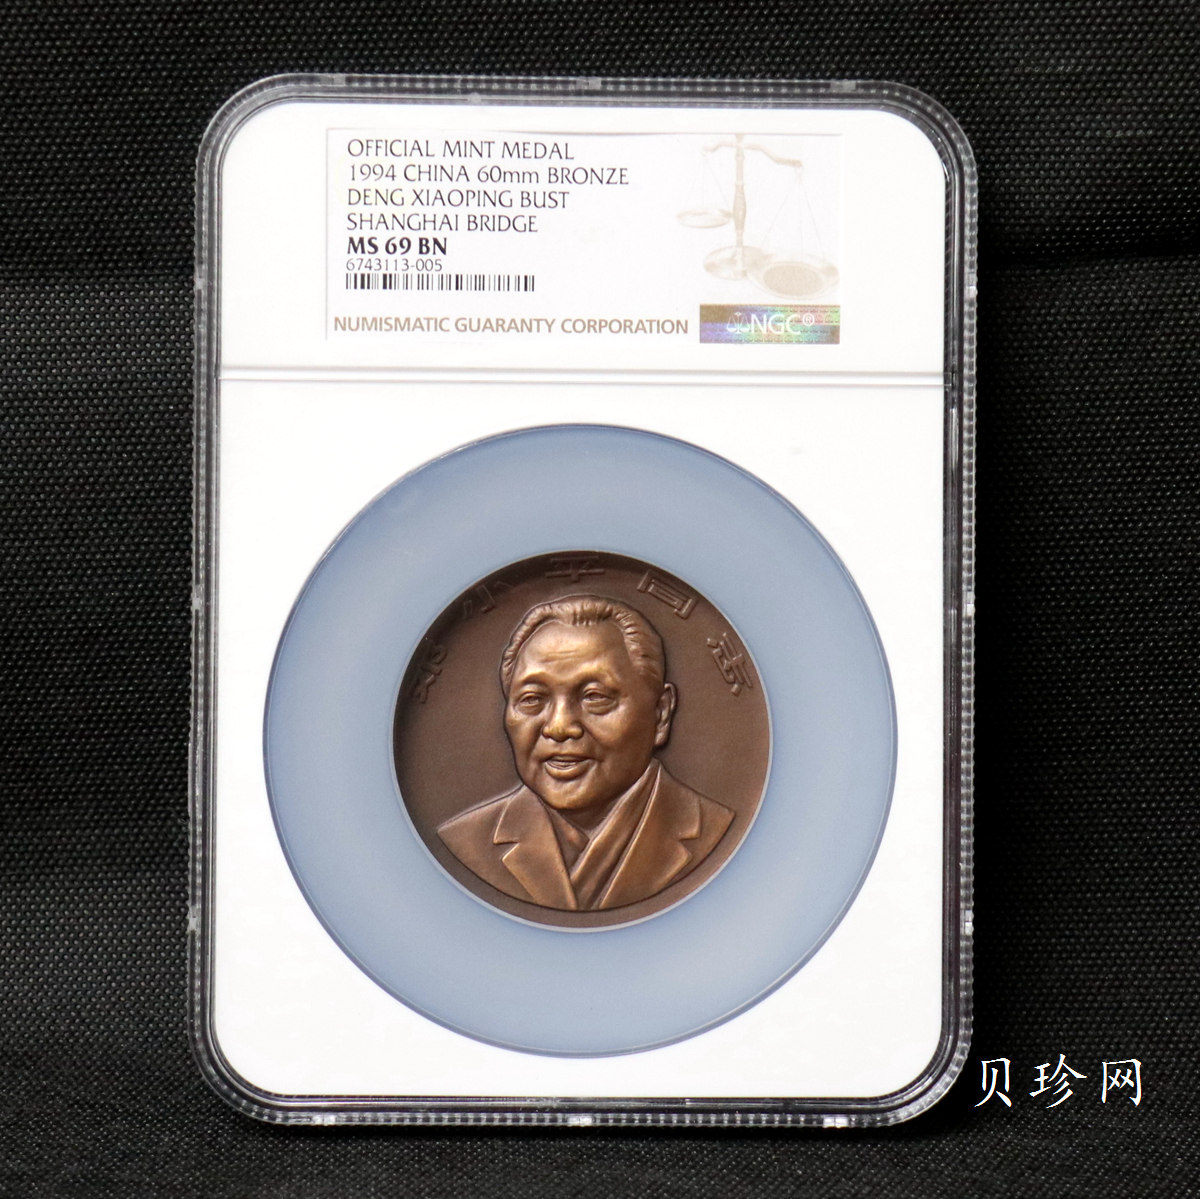 【979670】上海造币厂1997年邓小平同志60毫米铜章